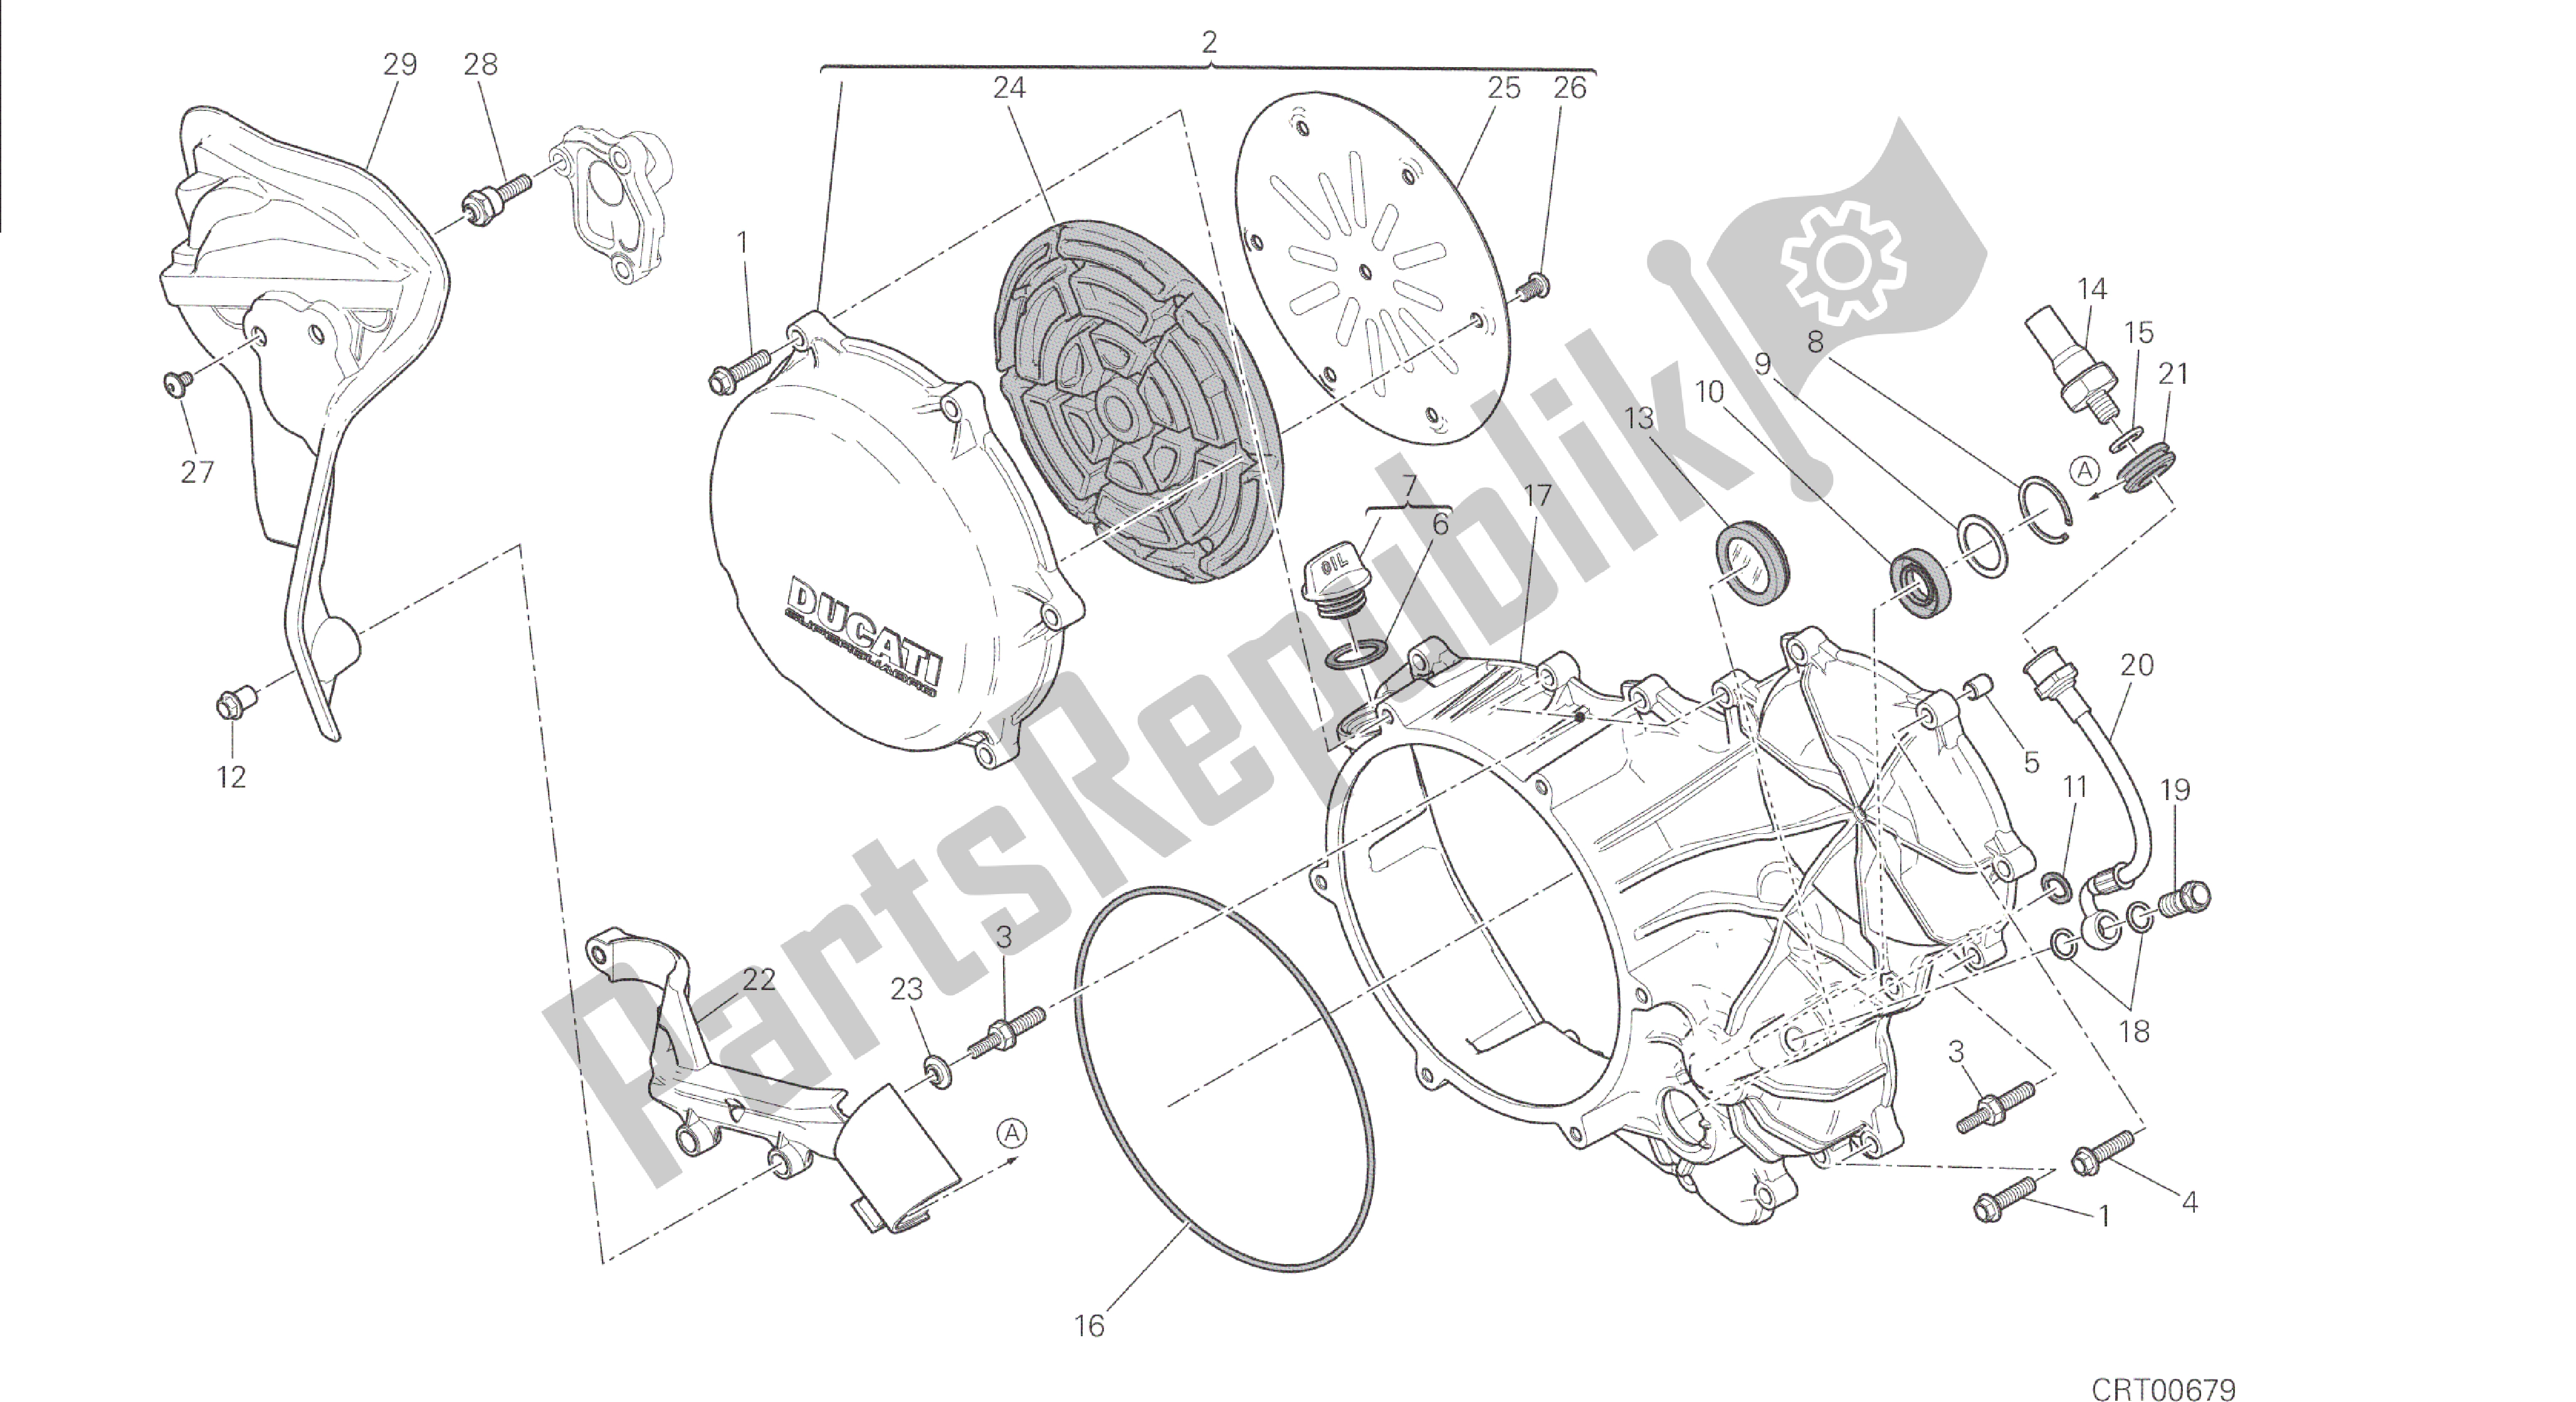 Todas las partes para Dibujo 005 - Embrague - Tapa Del Cárter Lateral [mod: 1299; Xst: Aus, Eur, Fra] Motor De Grupo de Ducati Panigale 1299 2015